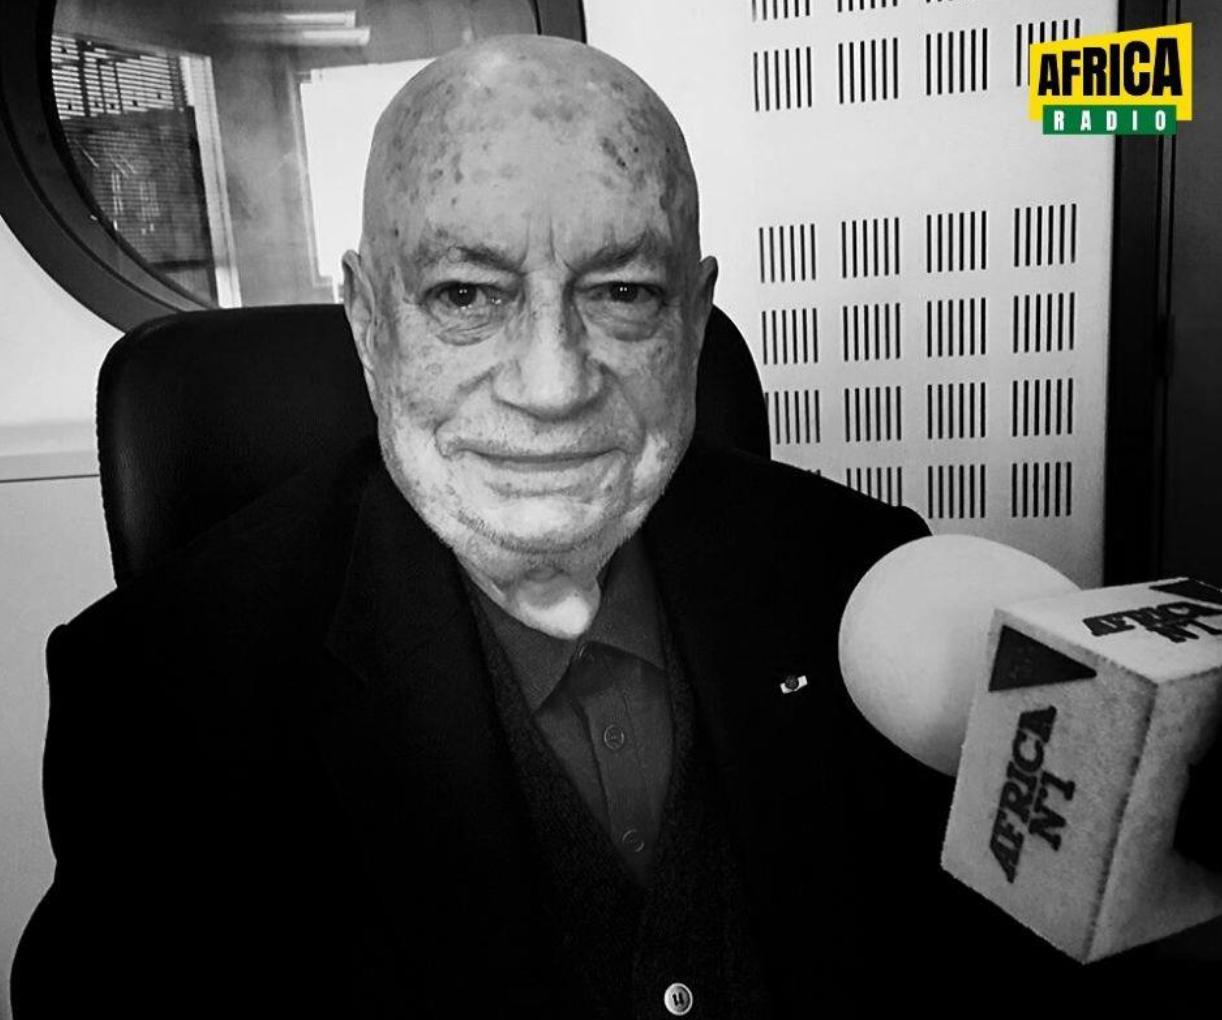 Africa Radio salue la mémoire de Hervé Bourges